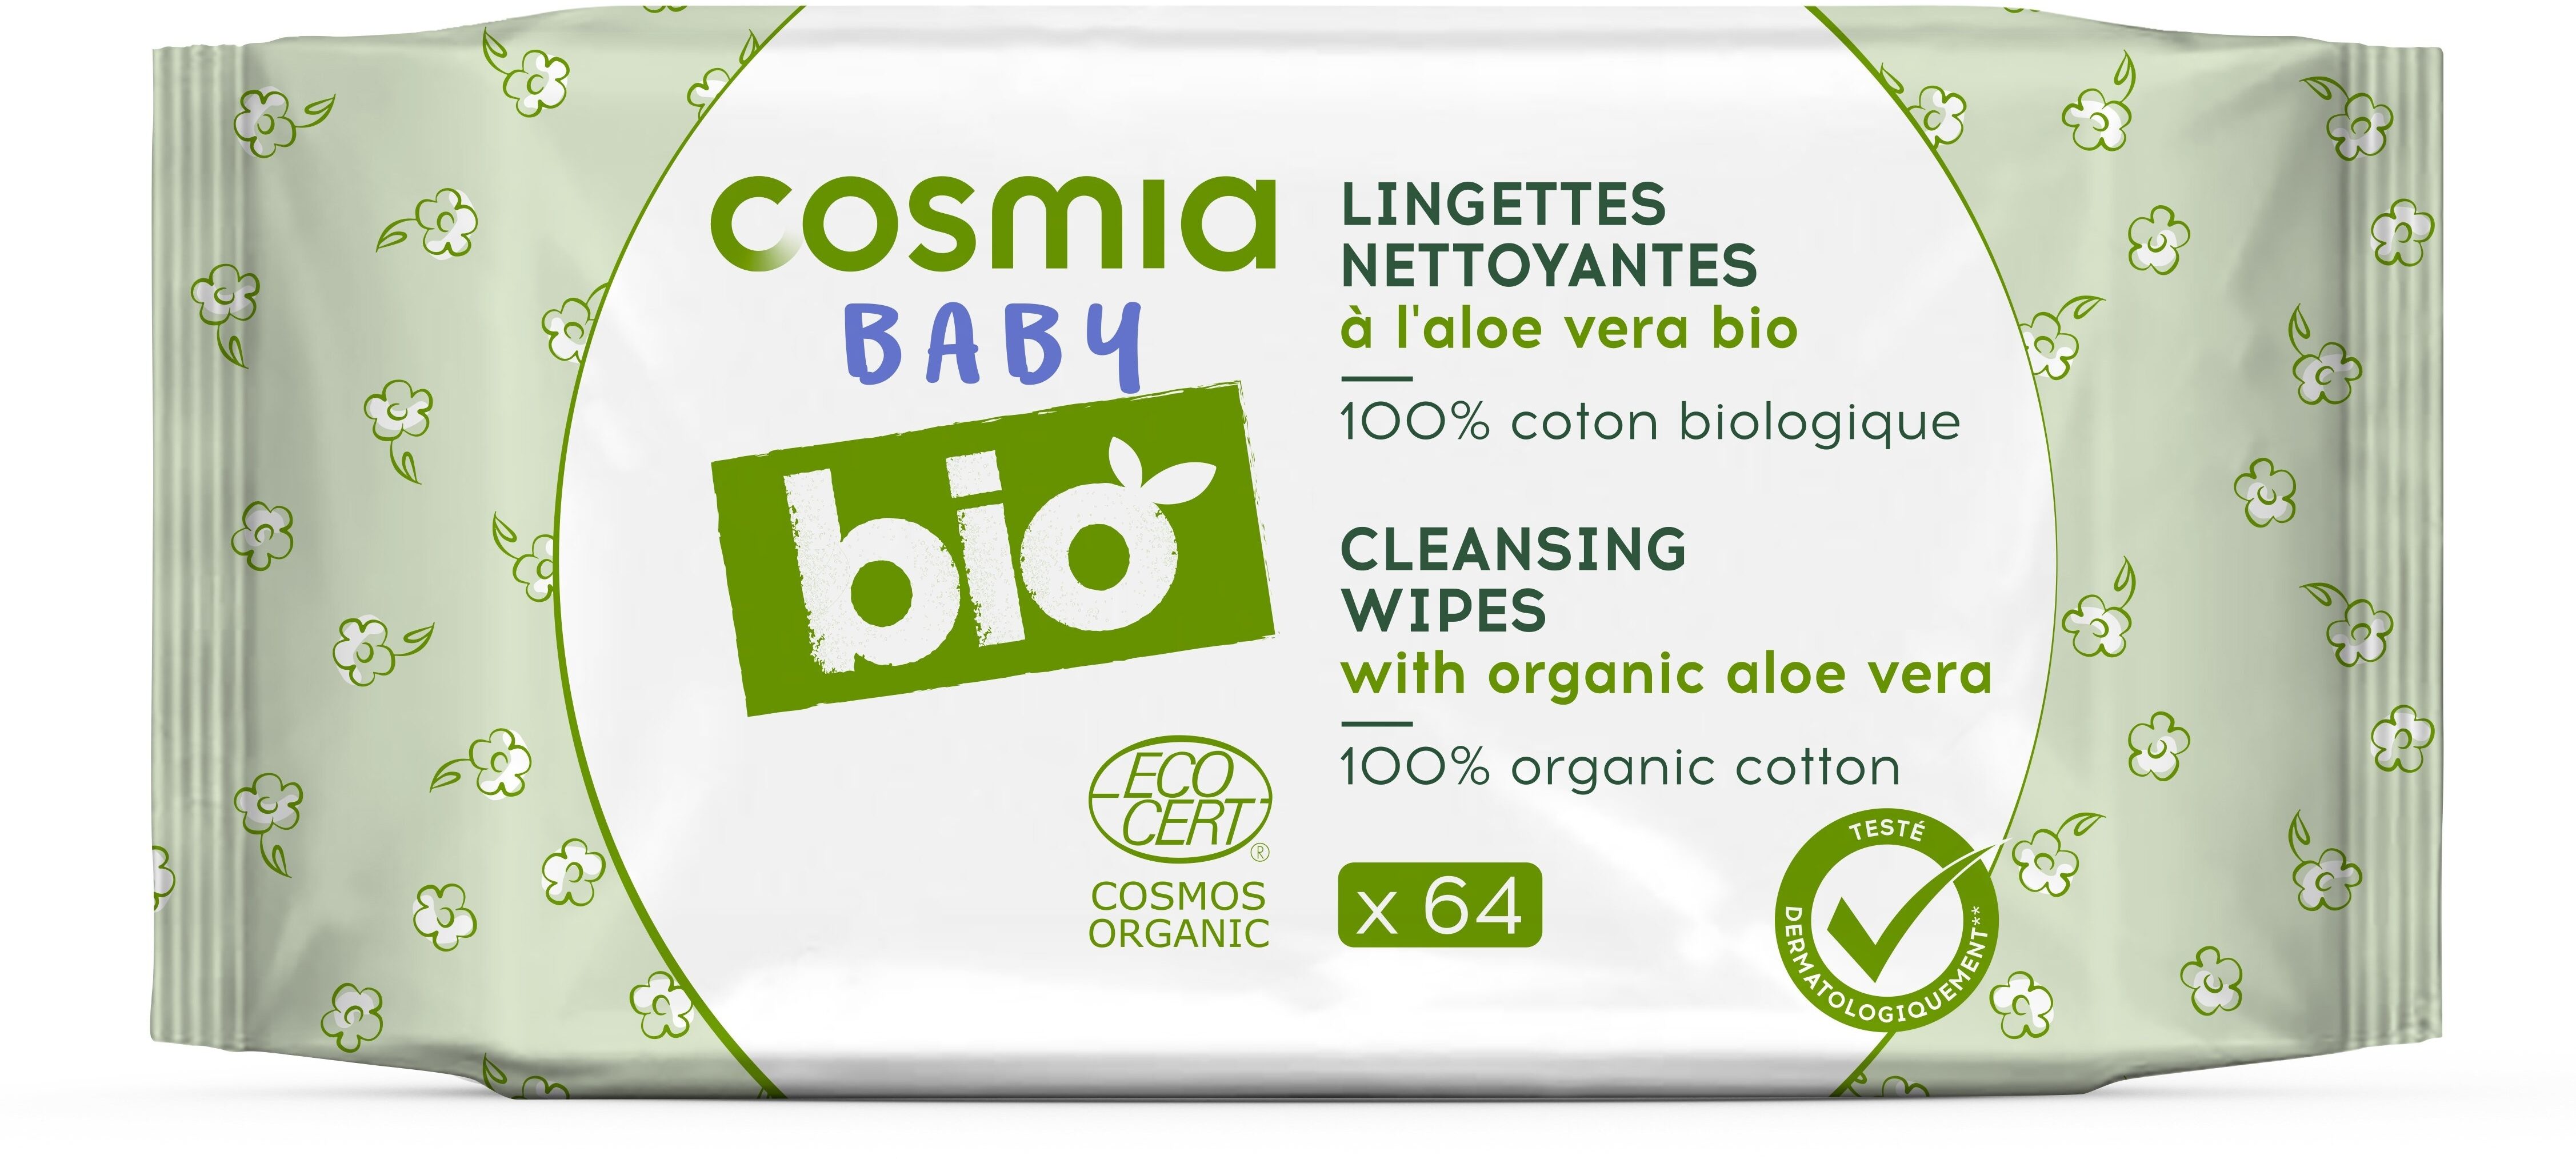 Lingettes nettoyantes à l'aloe vera bio - Product - fr